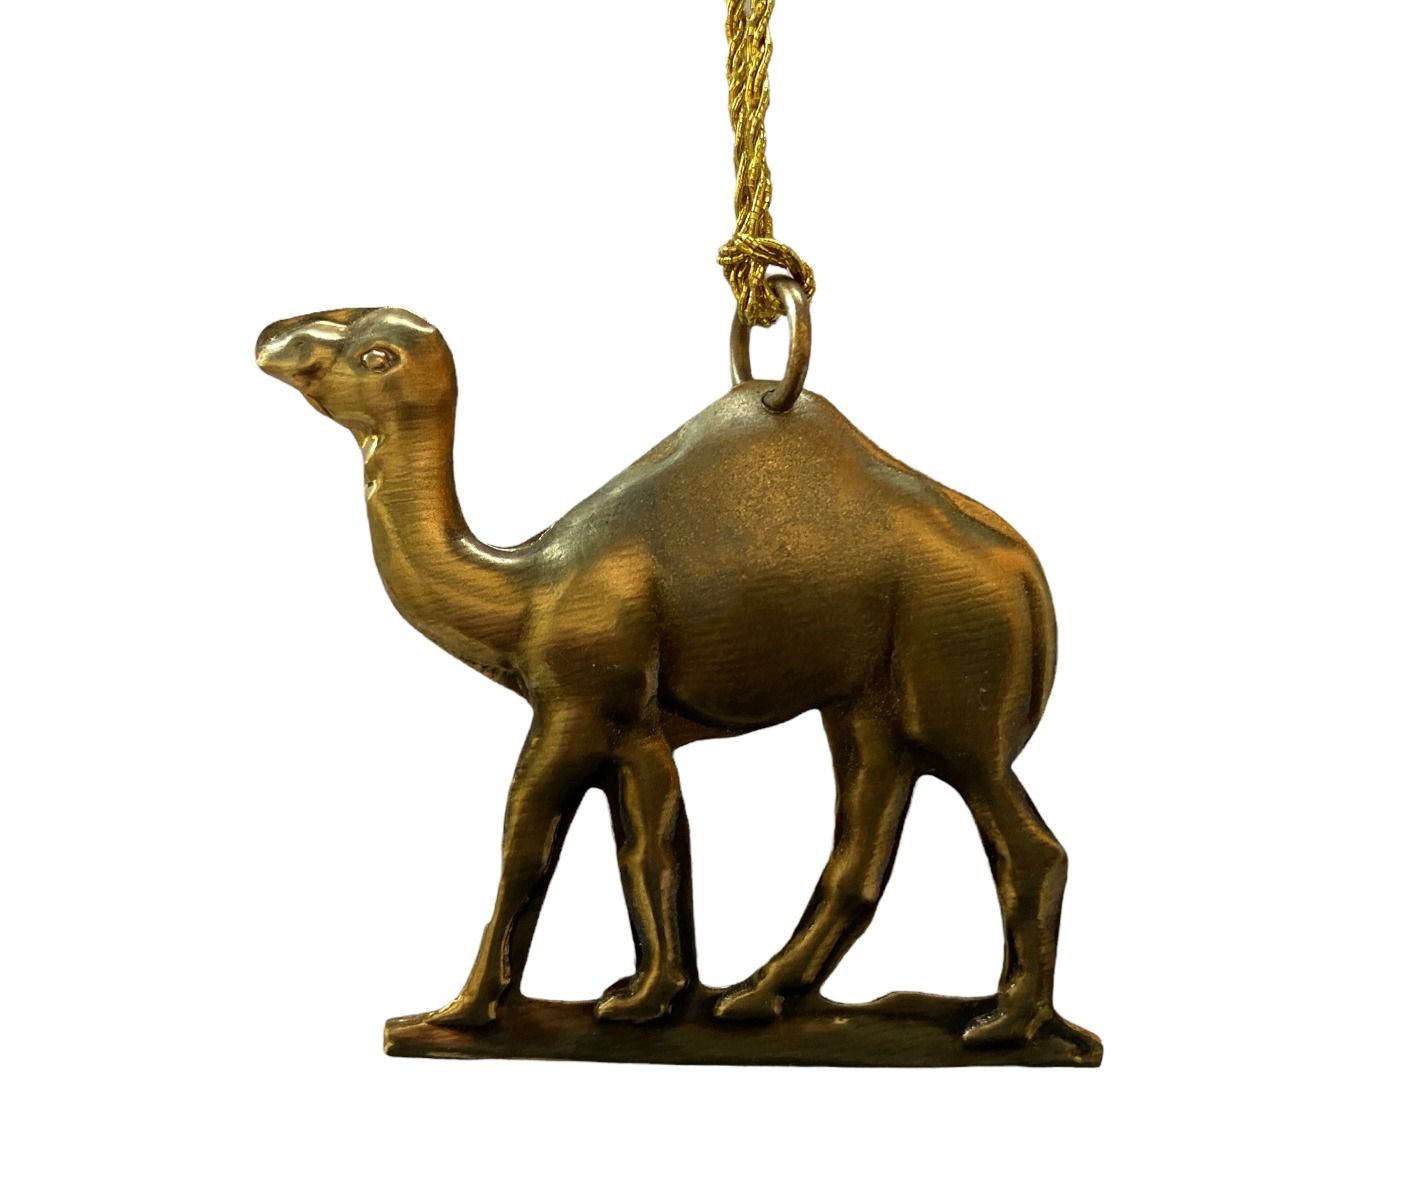 Camel ornament